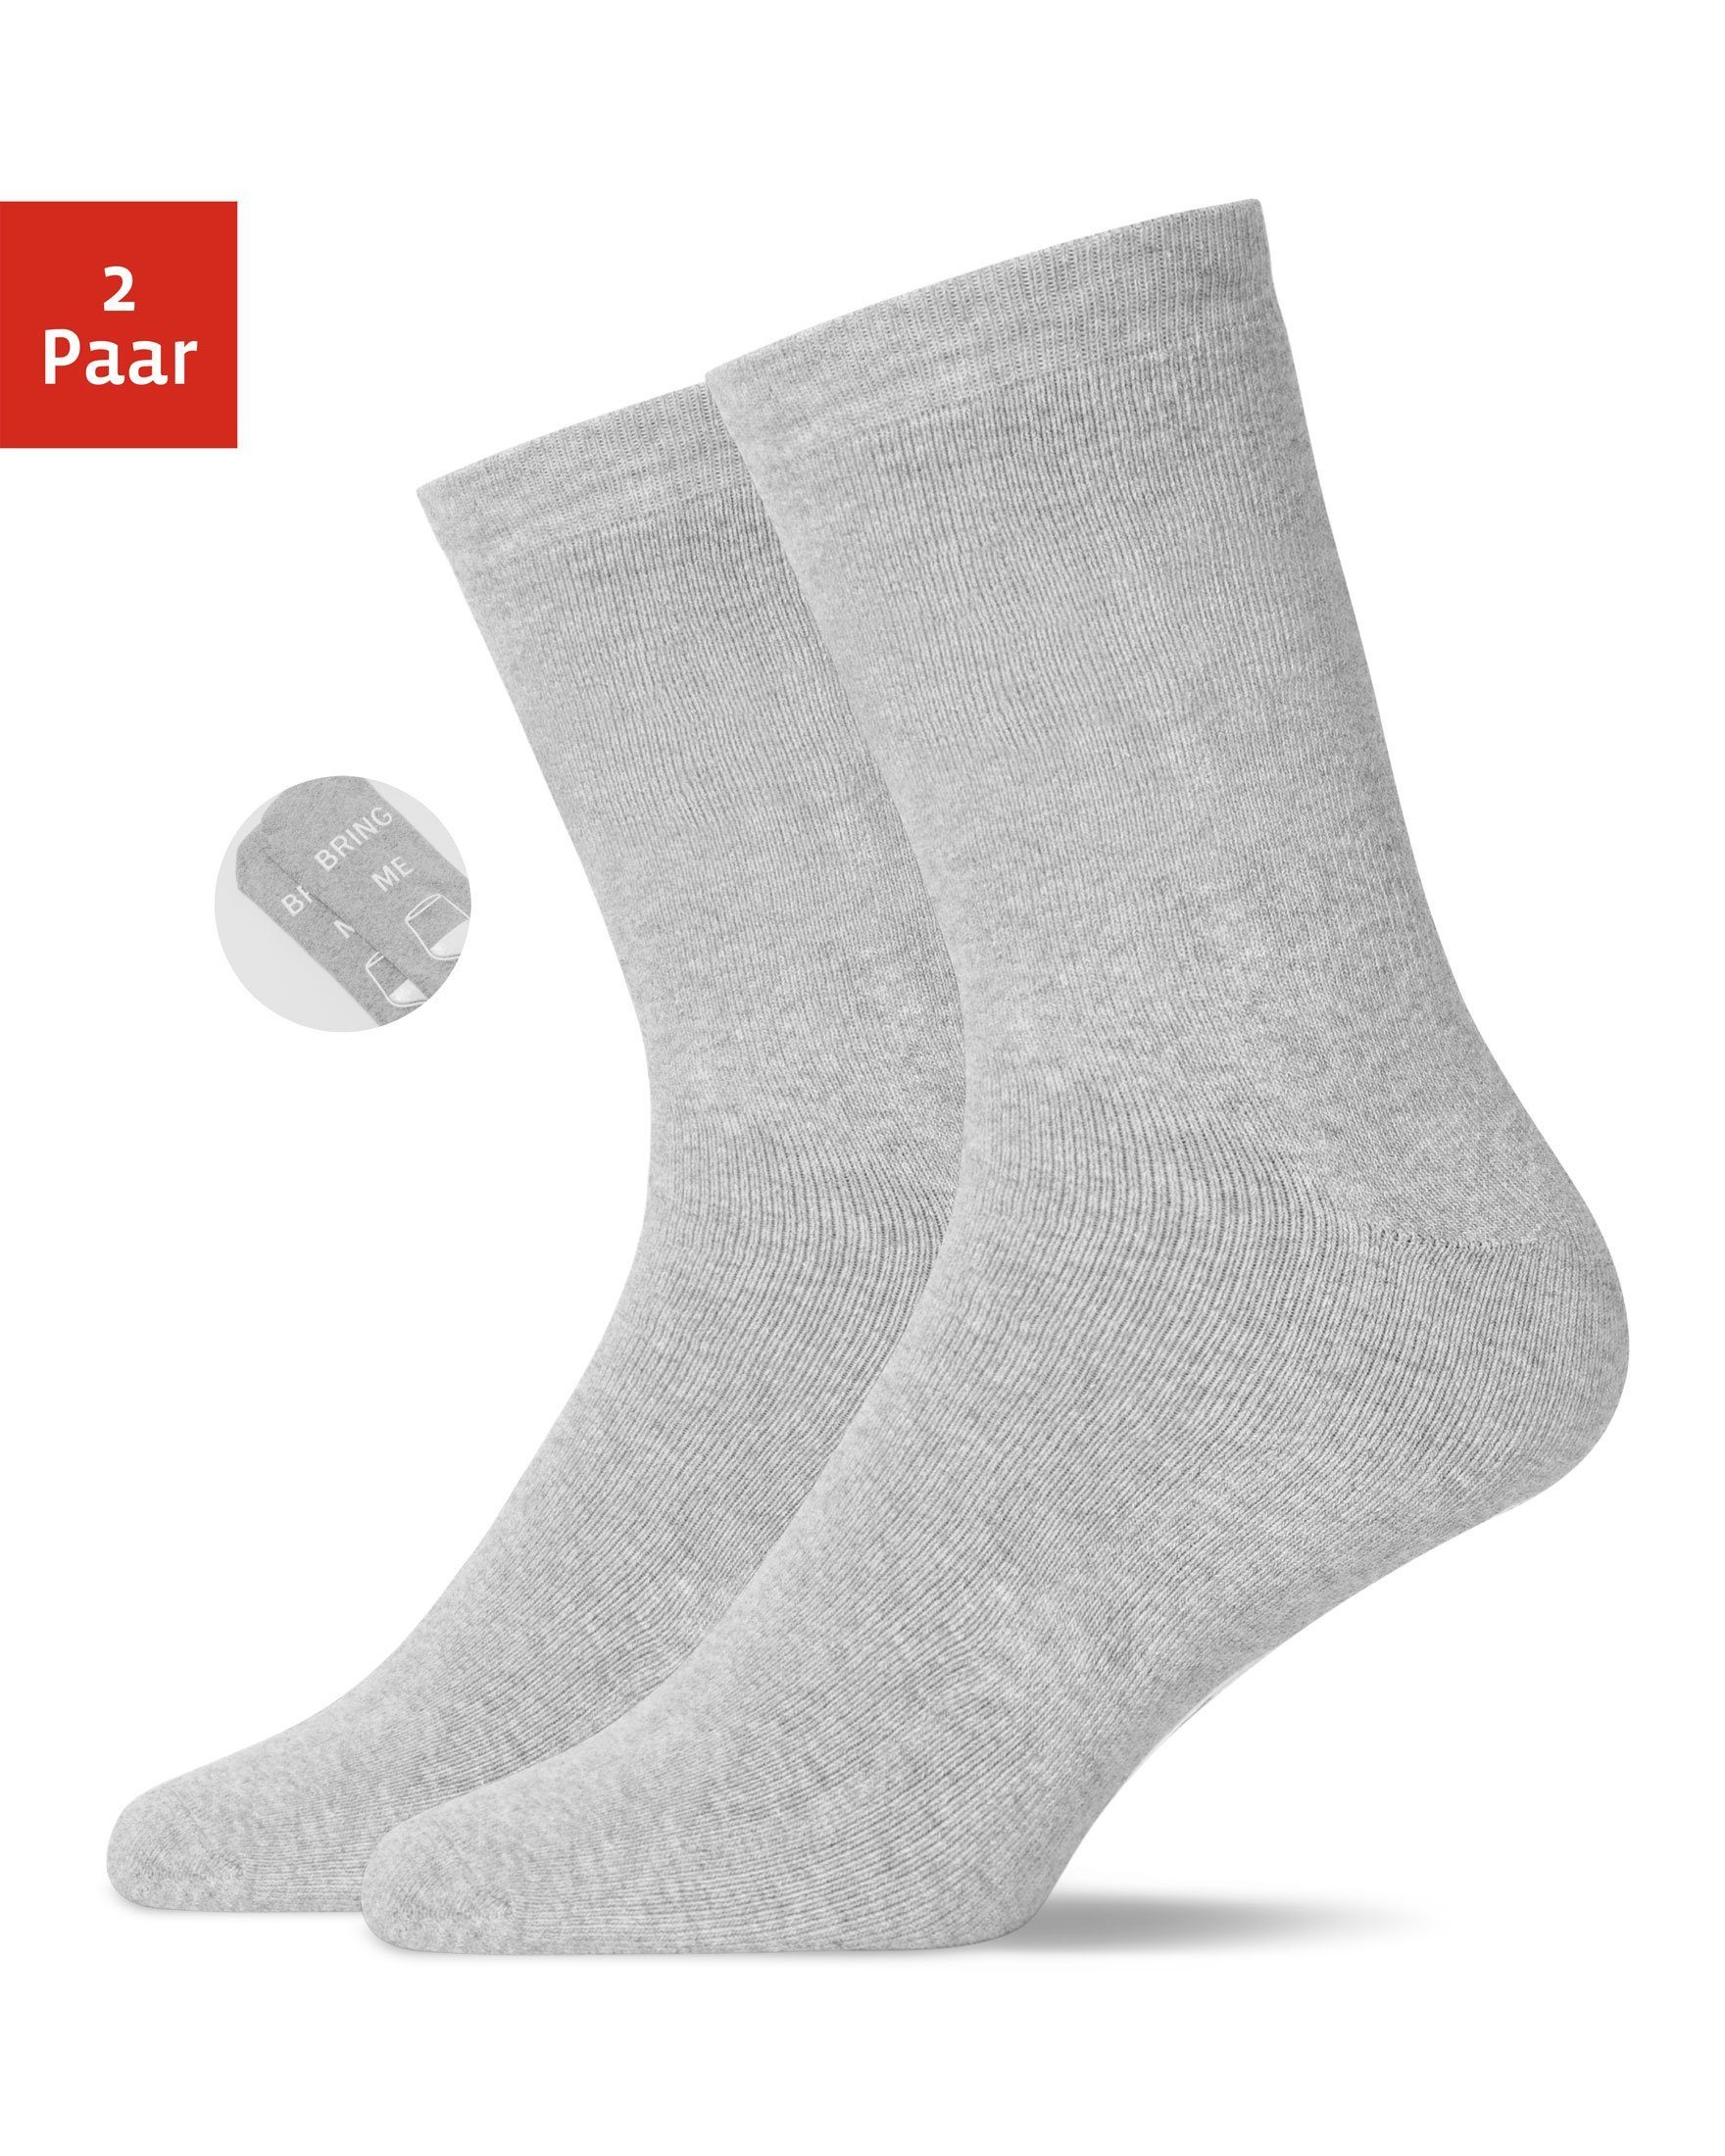 SNOCKS ABS-Socken »Anti-Rutsch Socken Damen & Herren ABS Socken« (2-Paar)  aus Bio-Baumwolle, Anti-Rutsch online kaufen | OTTO